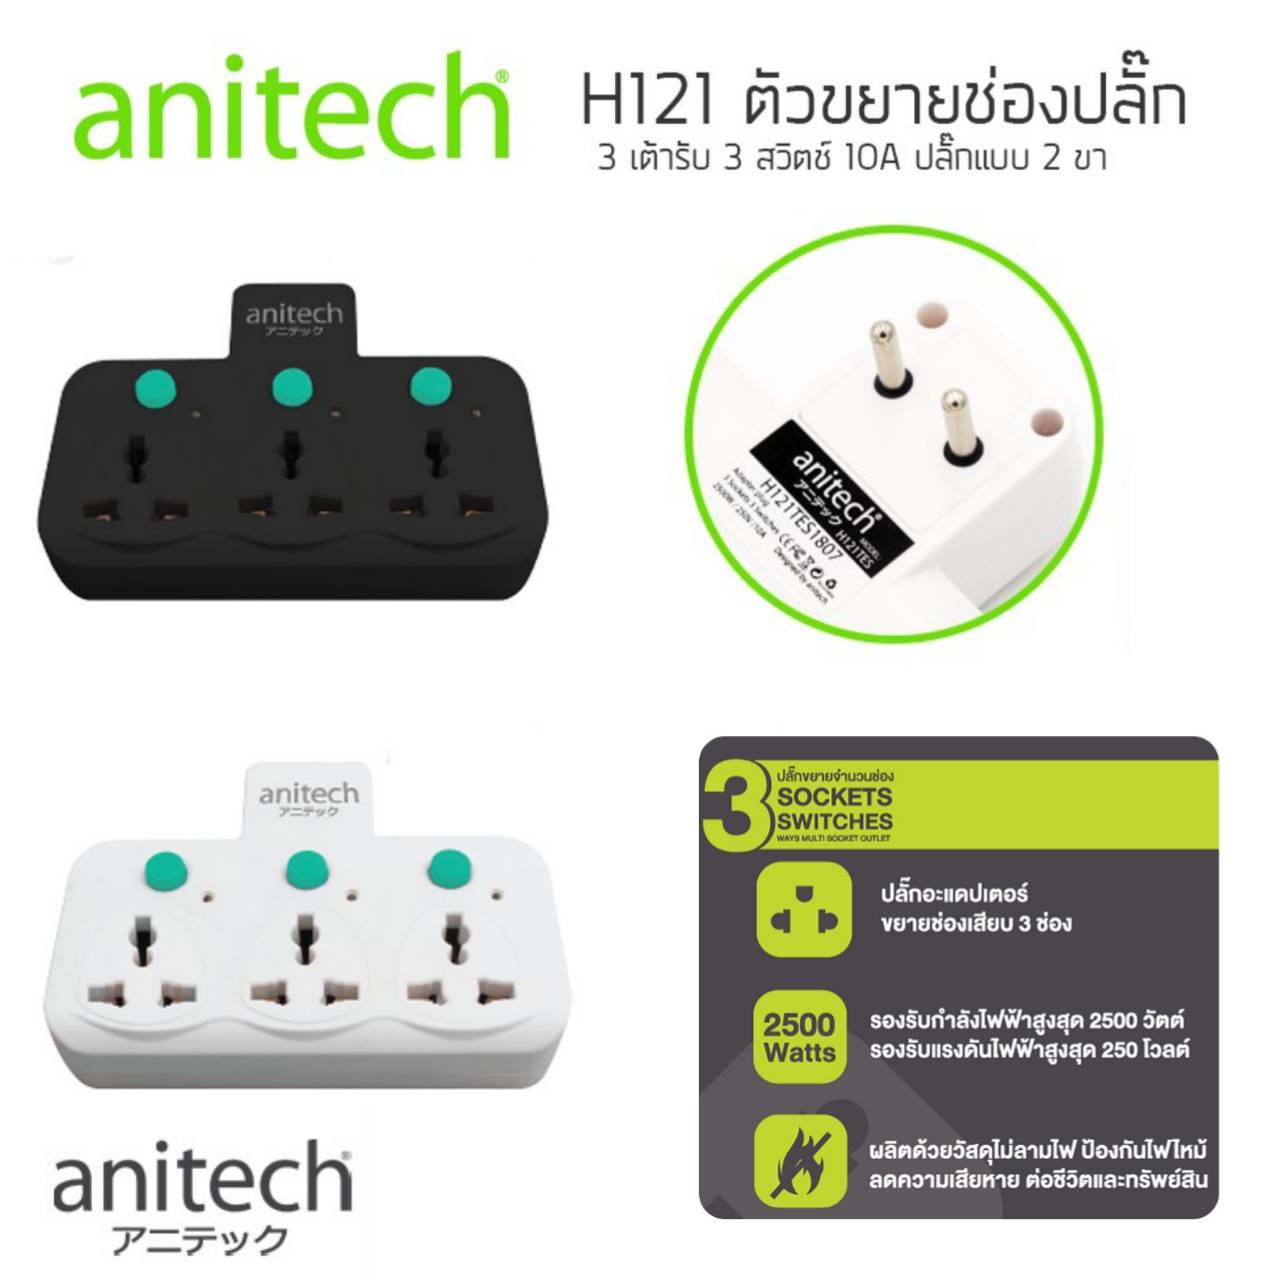 ปลั๊กไฟ anitech H121 แบบไม่มีสาย 3 ช่อง 3 สวิทซ์